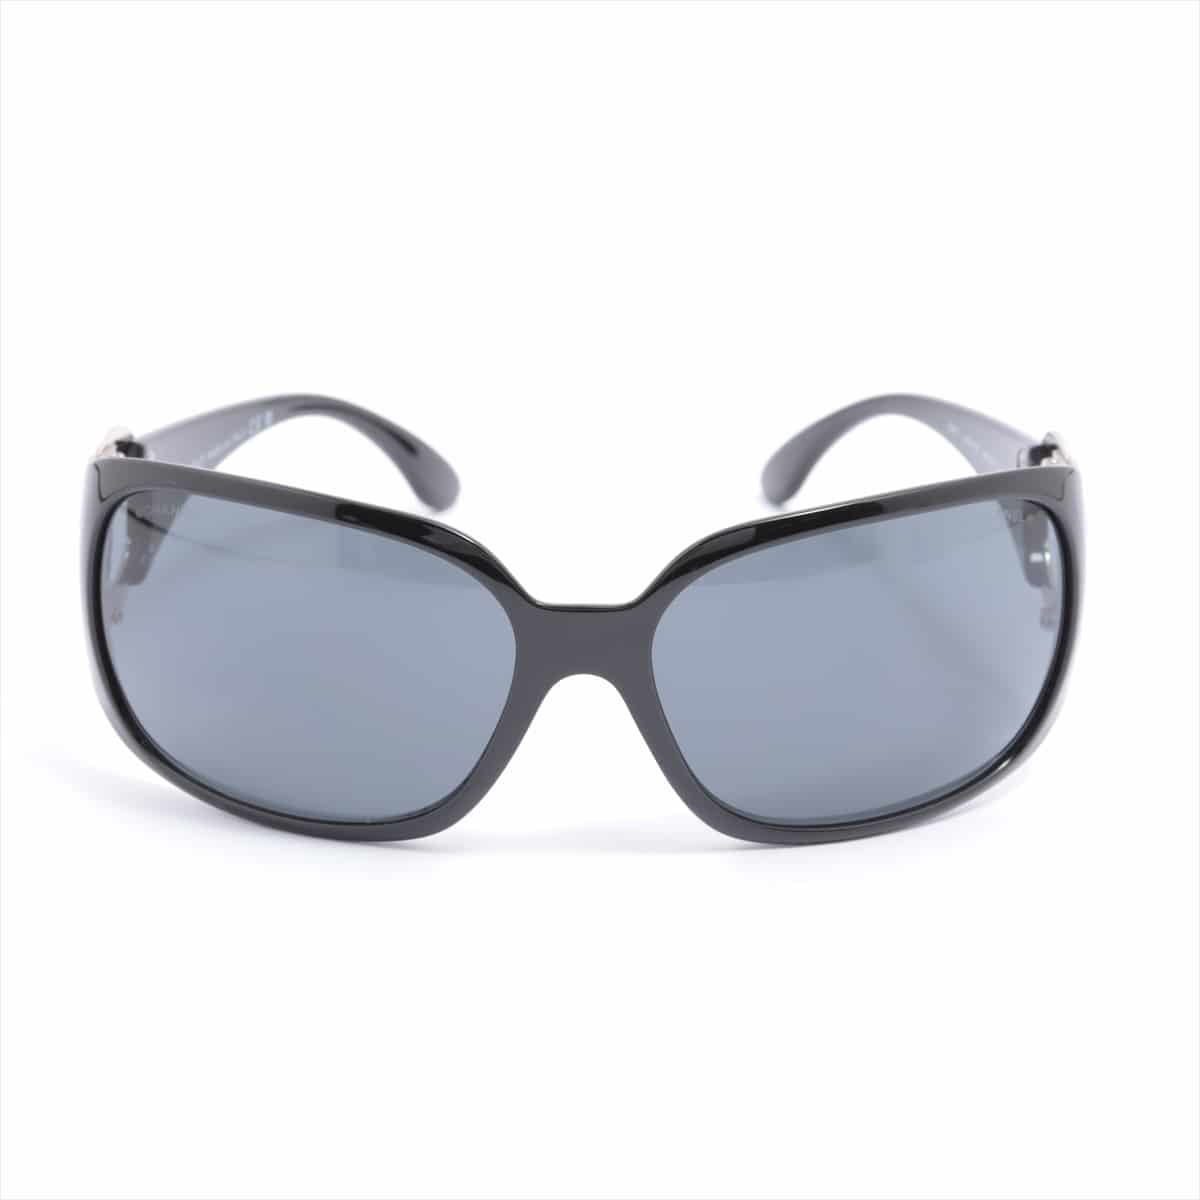 Chanel 6014 Coco Mark Sunglasses Plastic Black